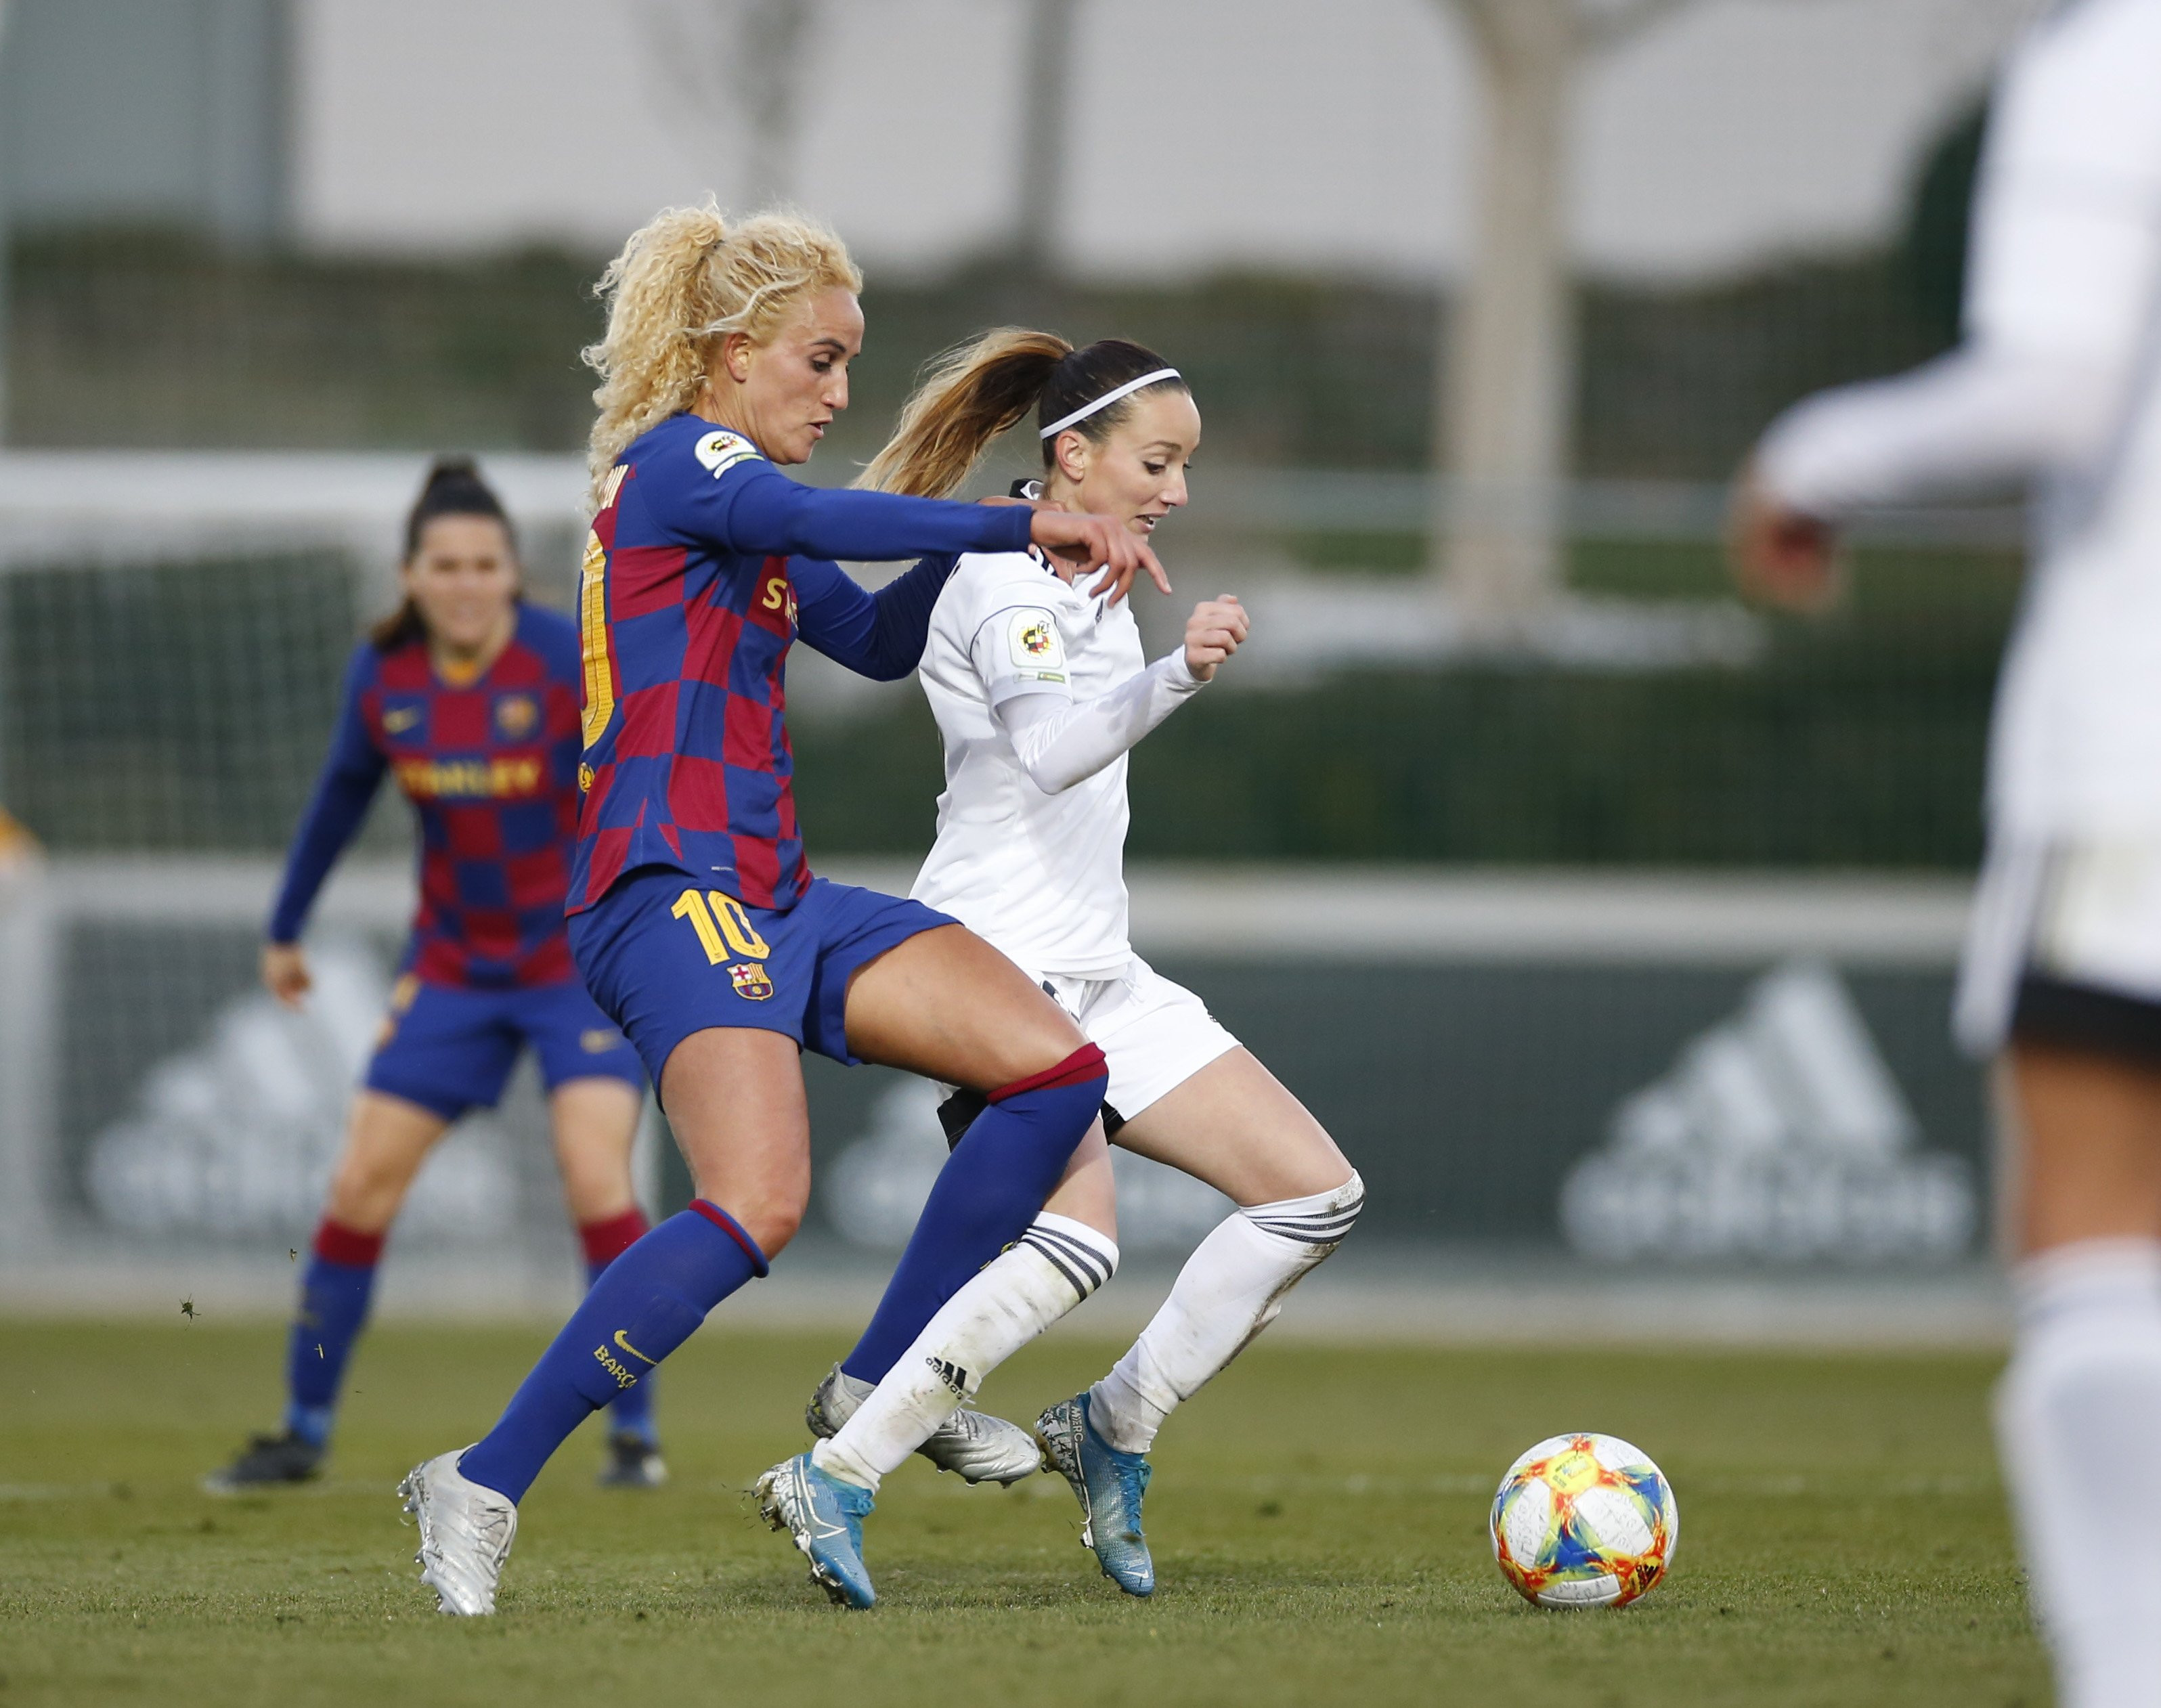 El Barça Femenino y el CD Tacón en un partido de la temporada 2019/20 / FC BARCELONA